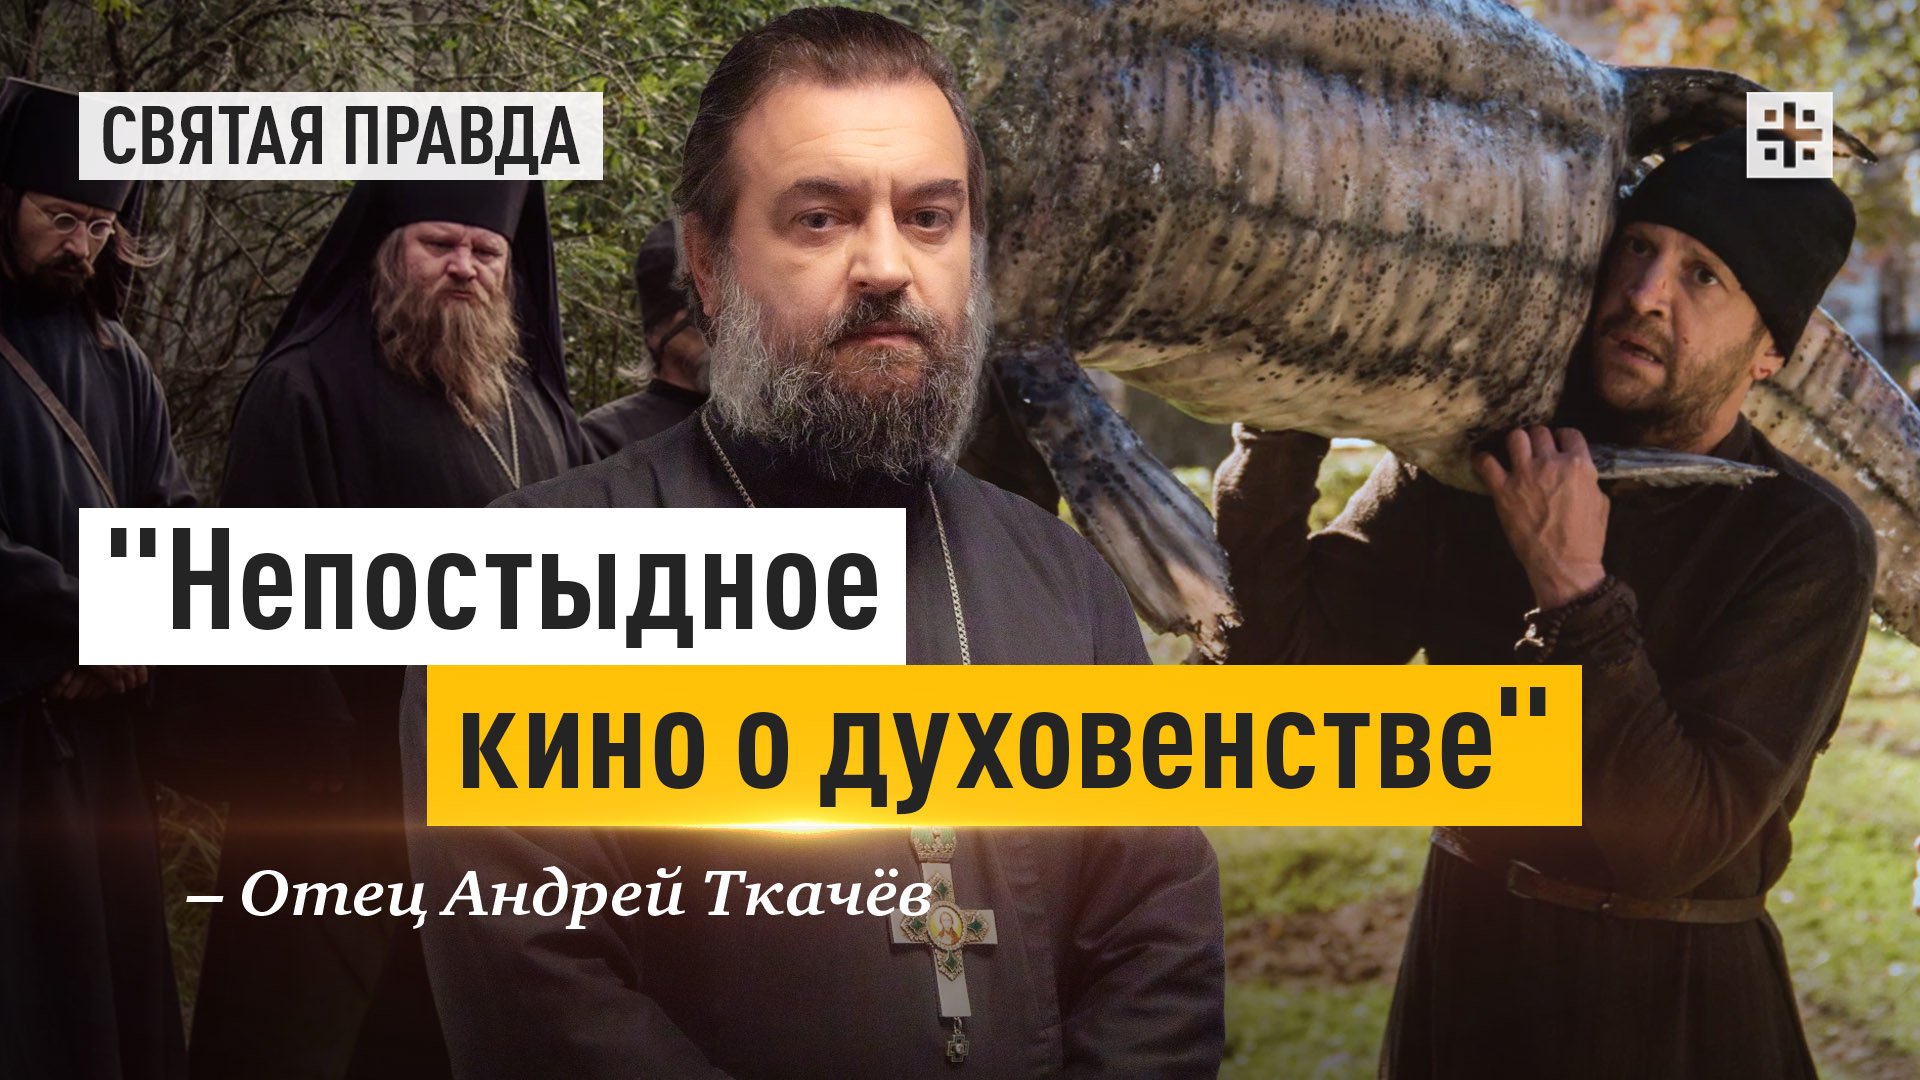 "Непостыдное кино о духовенстве": Иди и смотри фильм "Монах и бес" (2016) — отец Андрей Ткачёв